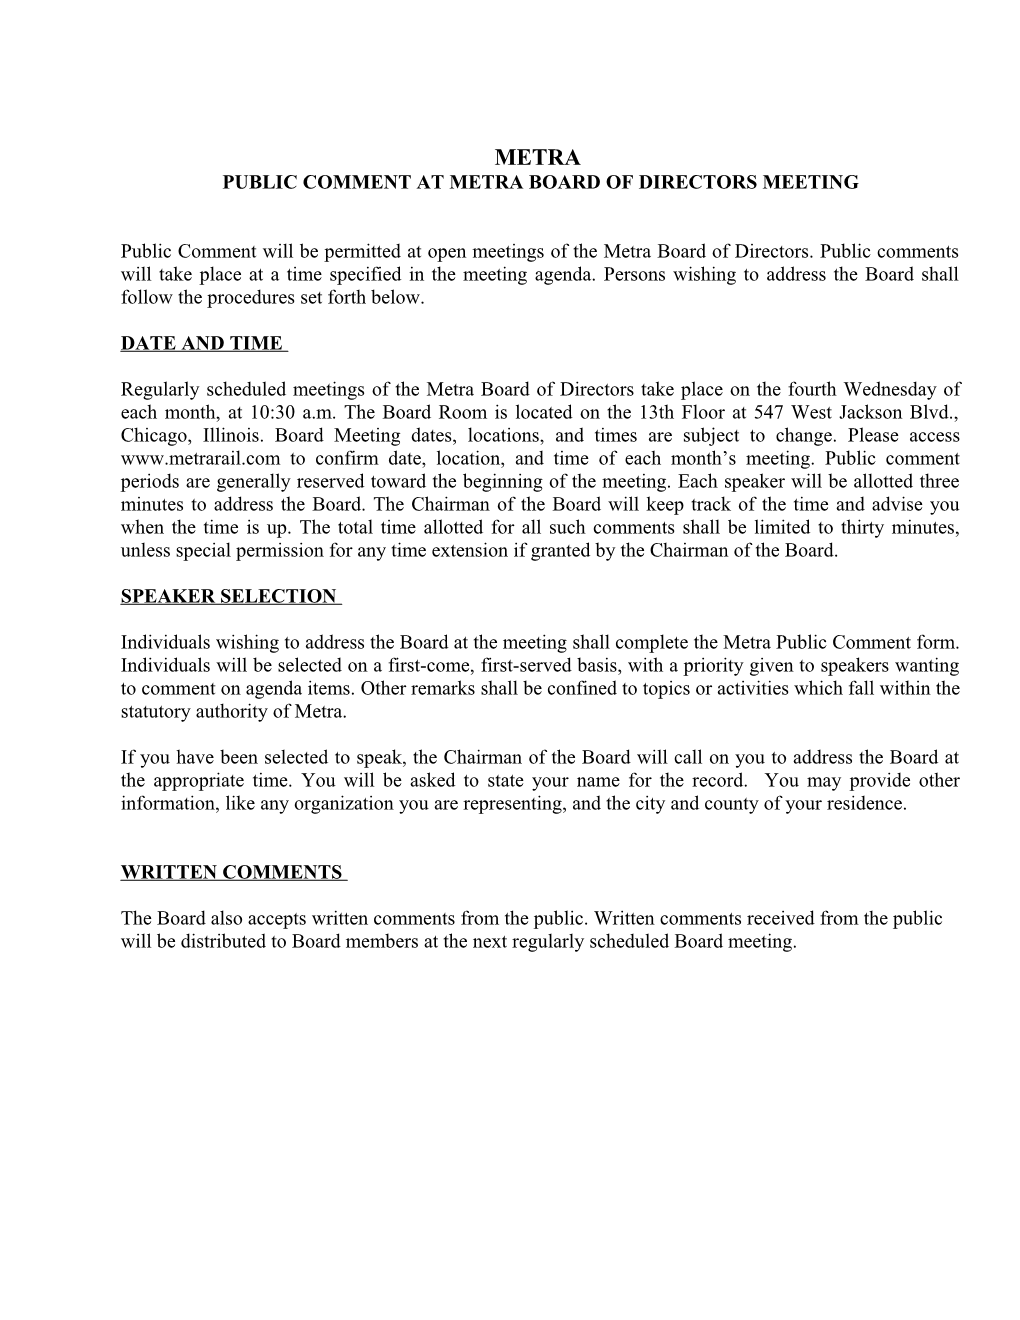 Public Comment at Metra Board of Directors Meeting